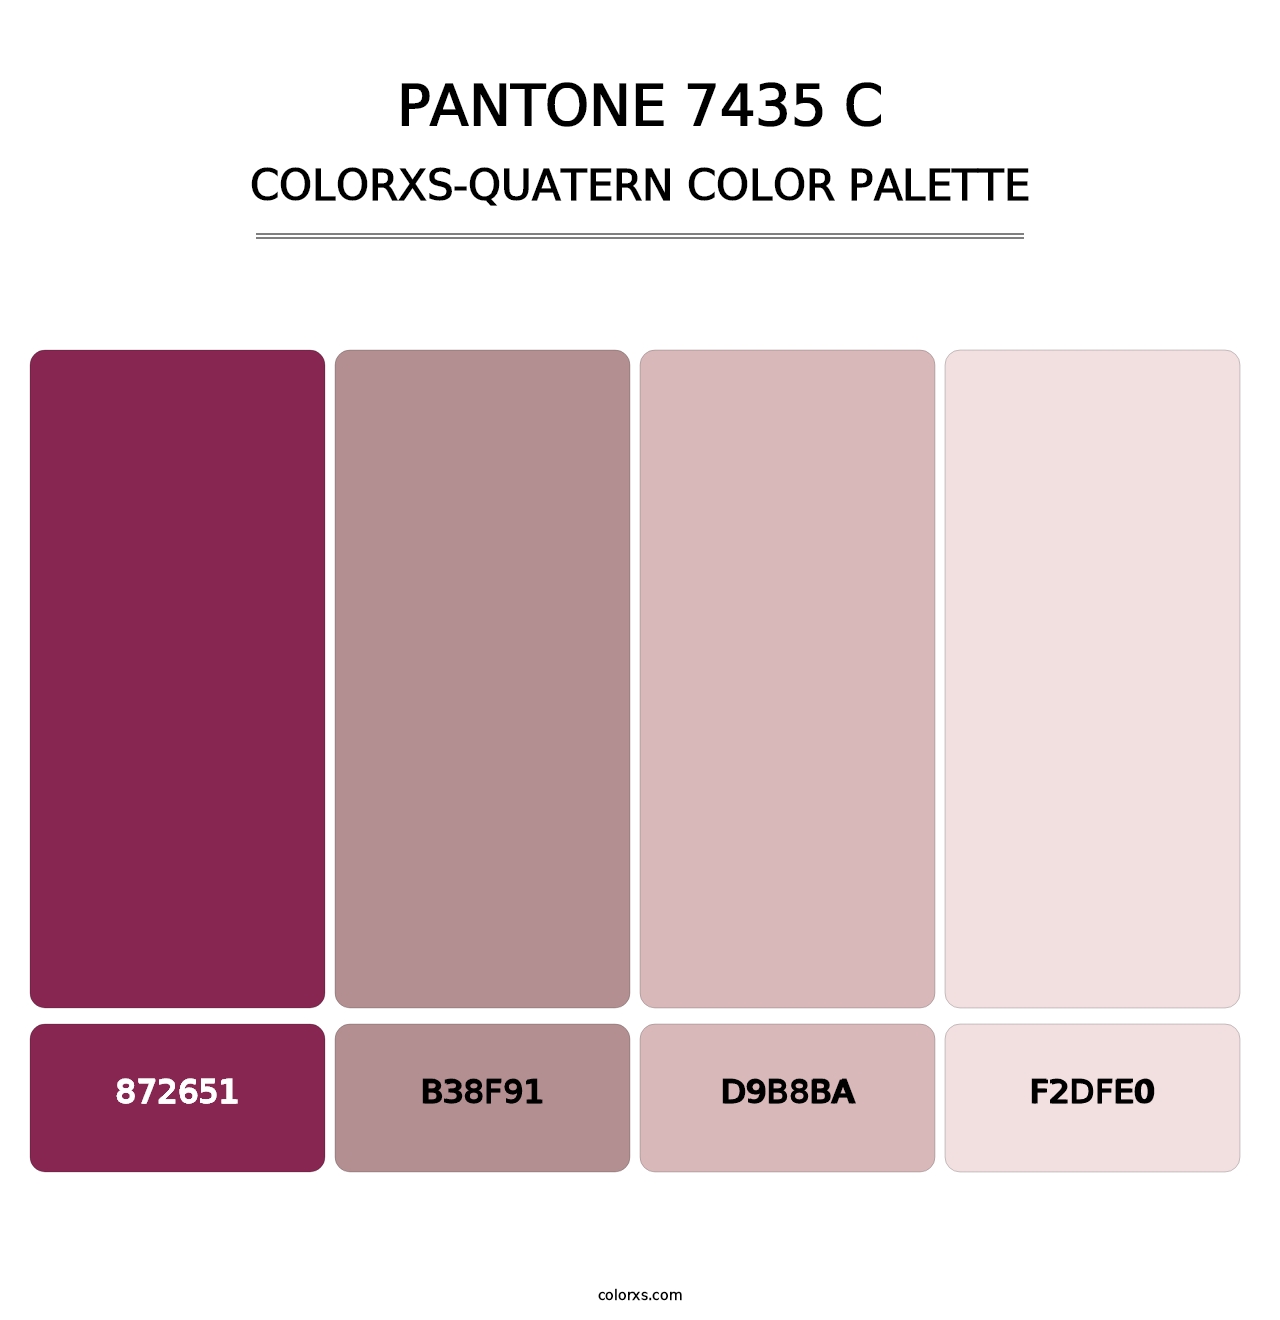 PANTONE 7435 C - Colorxs Quatern Palette